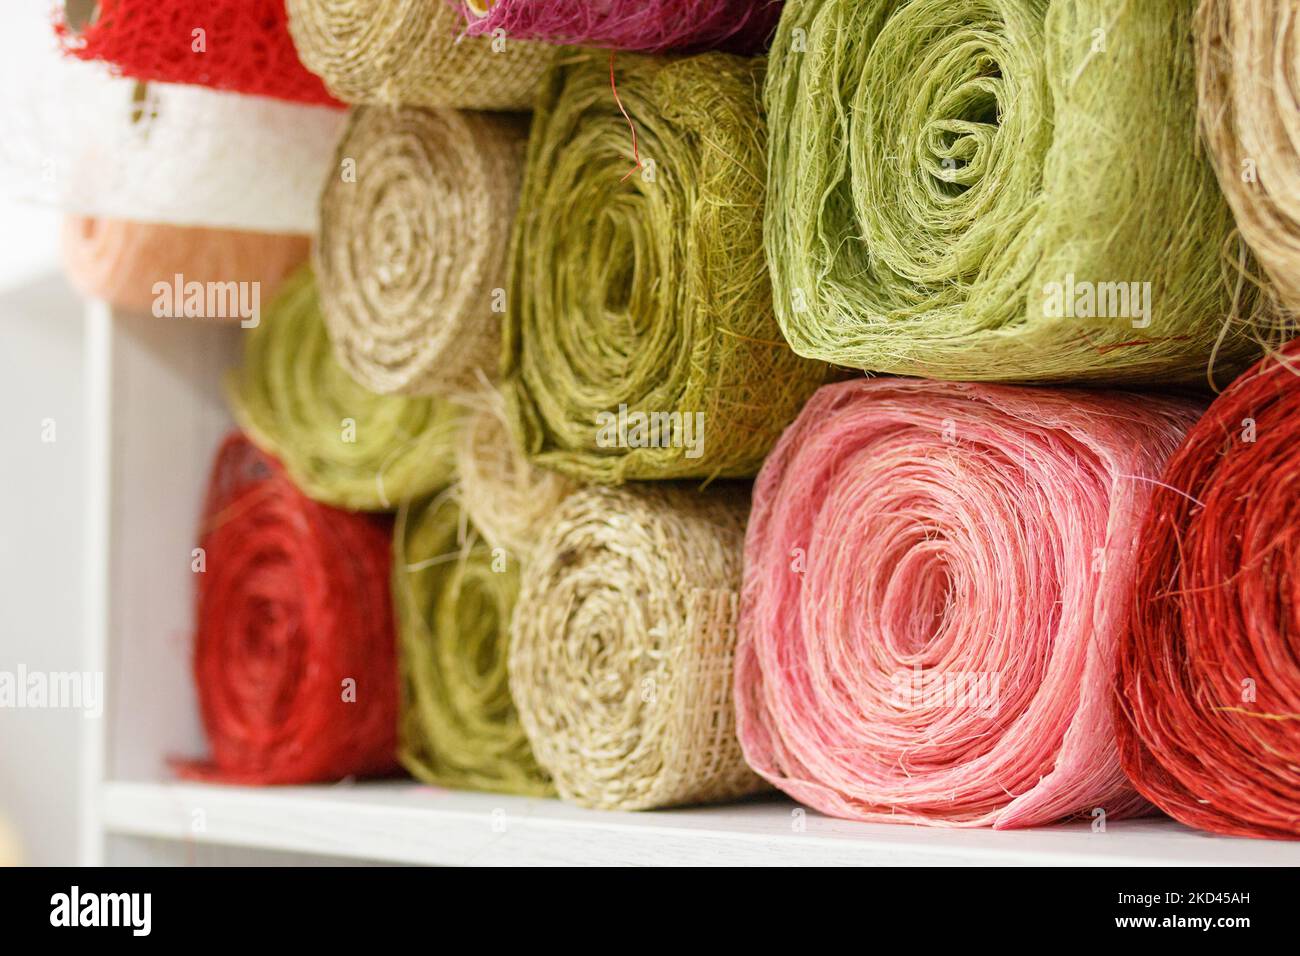 Rouleaux de tissu pour la couture. Fils multicolores de couleur verte, rose, rouge. Outils de couture. Fils, tricots, crochet, soie, lin, synthétiques à la main Banque D'Images